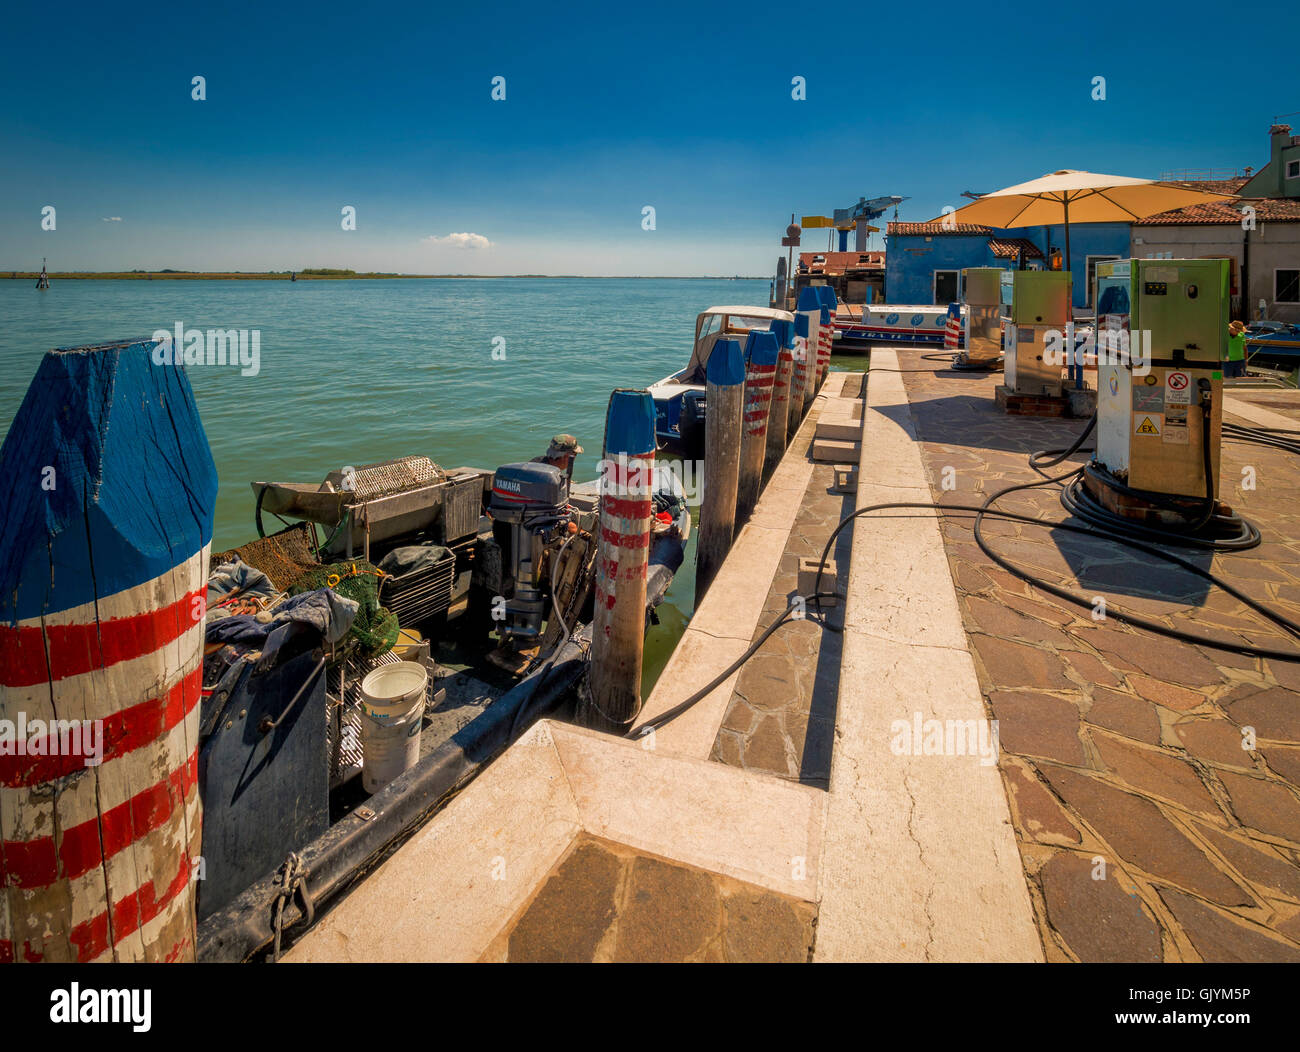 Barca stazione di riempimento benzina sull'isola di Burano, Venezia, Italia. Foto Stock